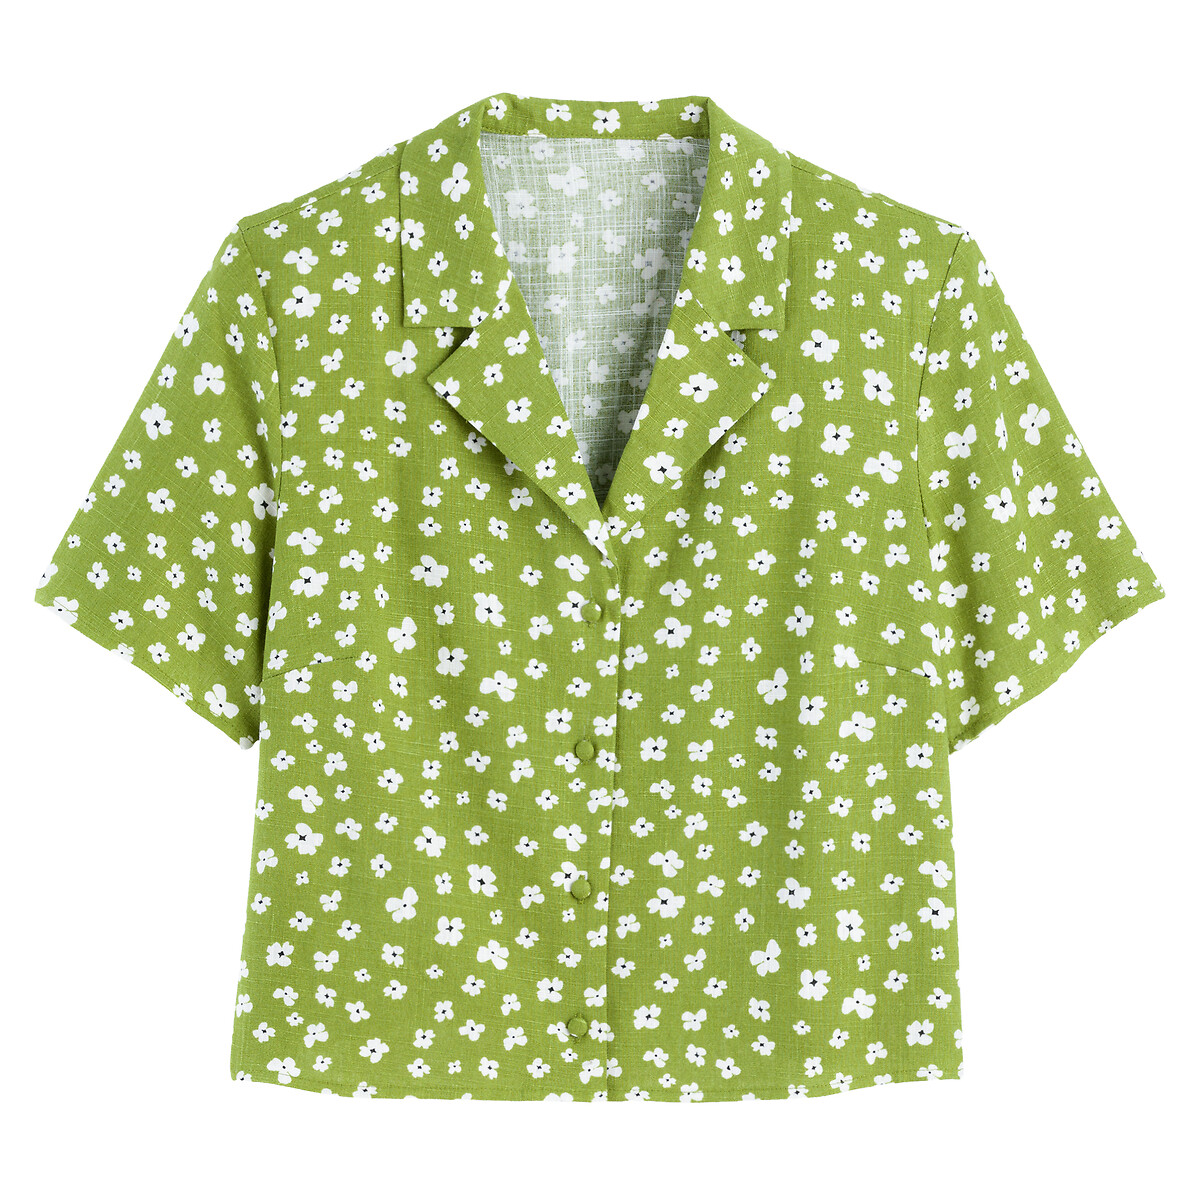 Блузка С цветочным принтом и короткими рукавами 40 (FR) - 46 (RUS) зеленый LaRedoute, размер 40 (FR) - 46 (RUS) Блузка С цветочным принтом и короткими рукавами 40 (FR) - 46 (RUS) зеленый - фото 5